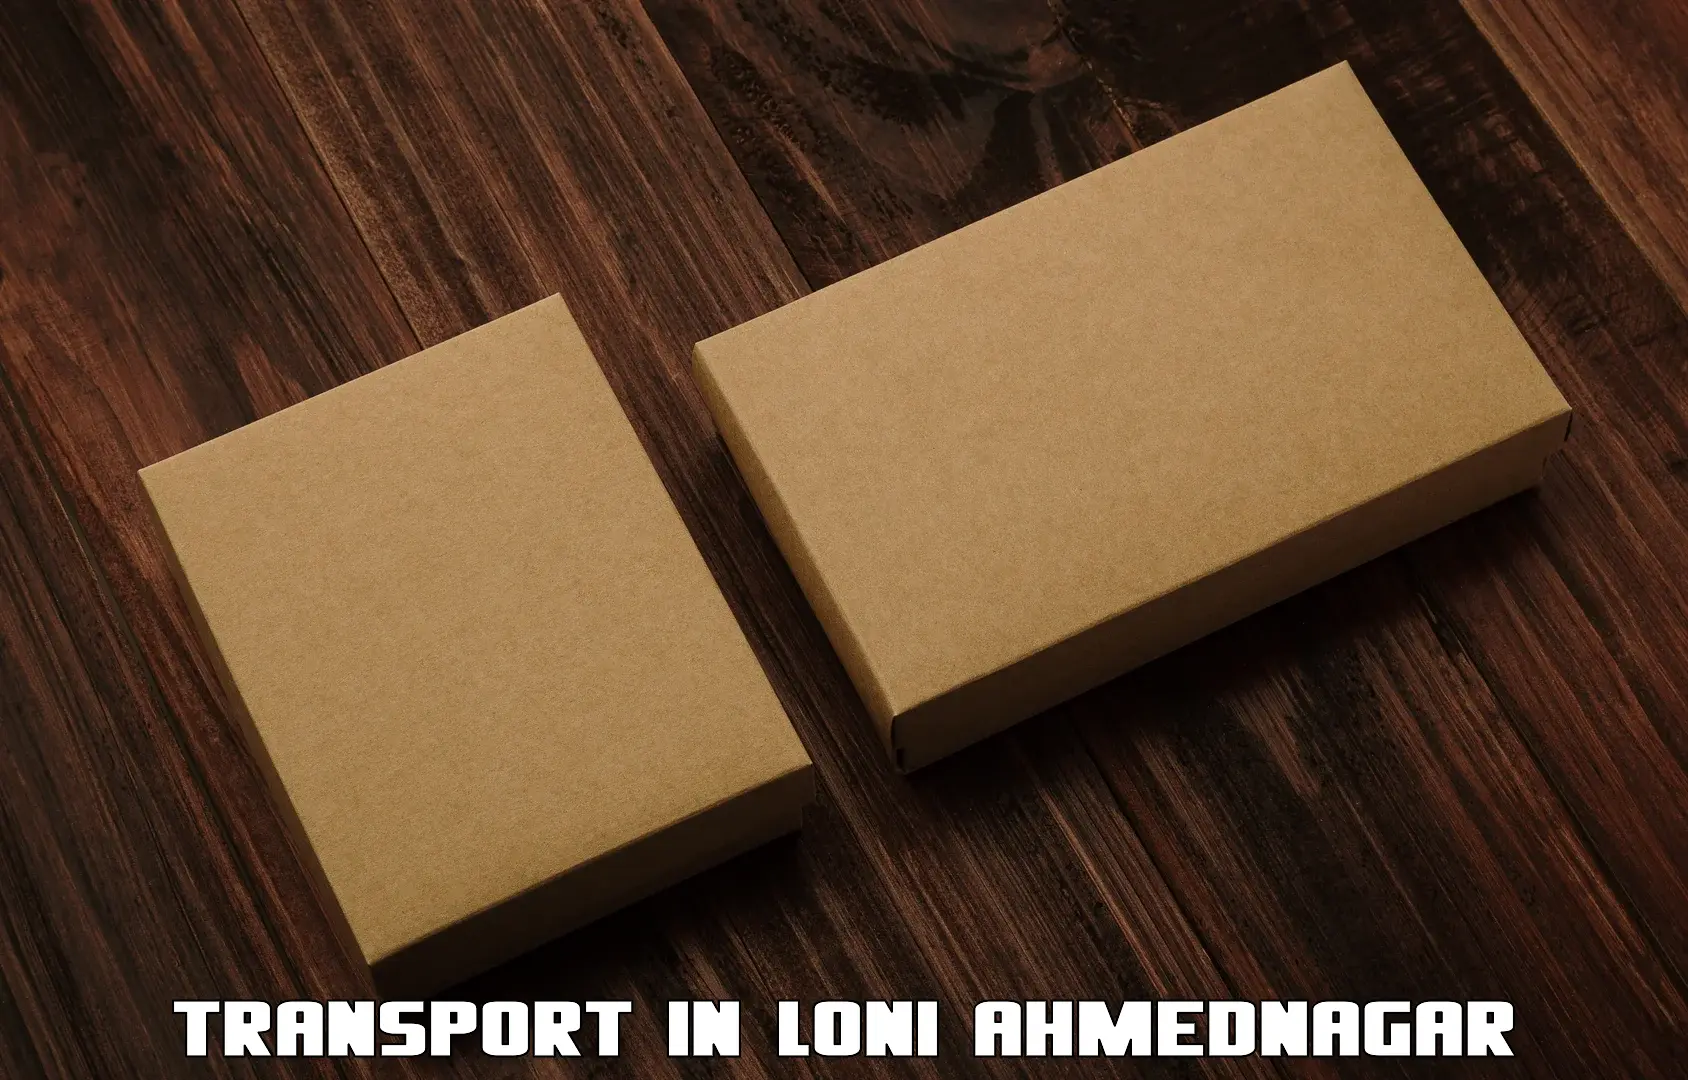 Interstate goods transport in Loni Ahmednagar